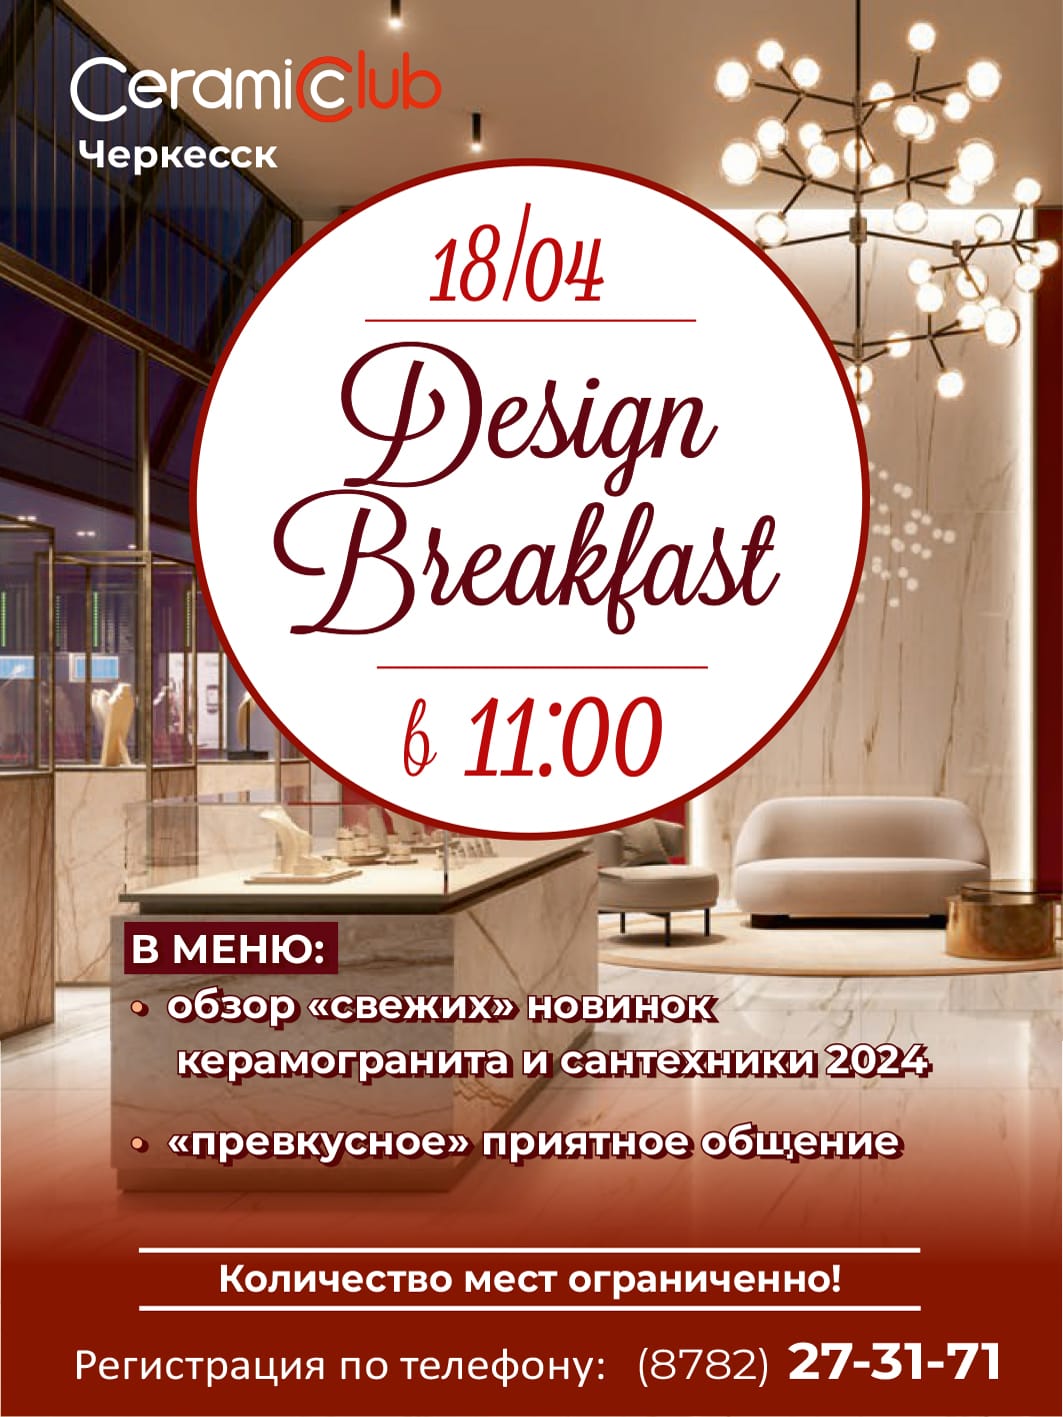 Design Breakfast  CeramicClub !!!!!